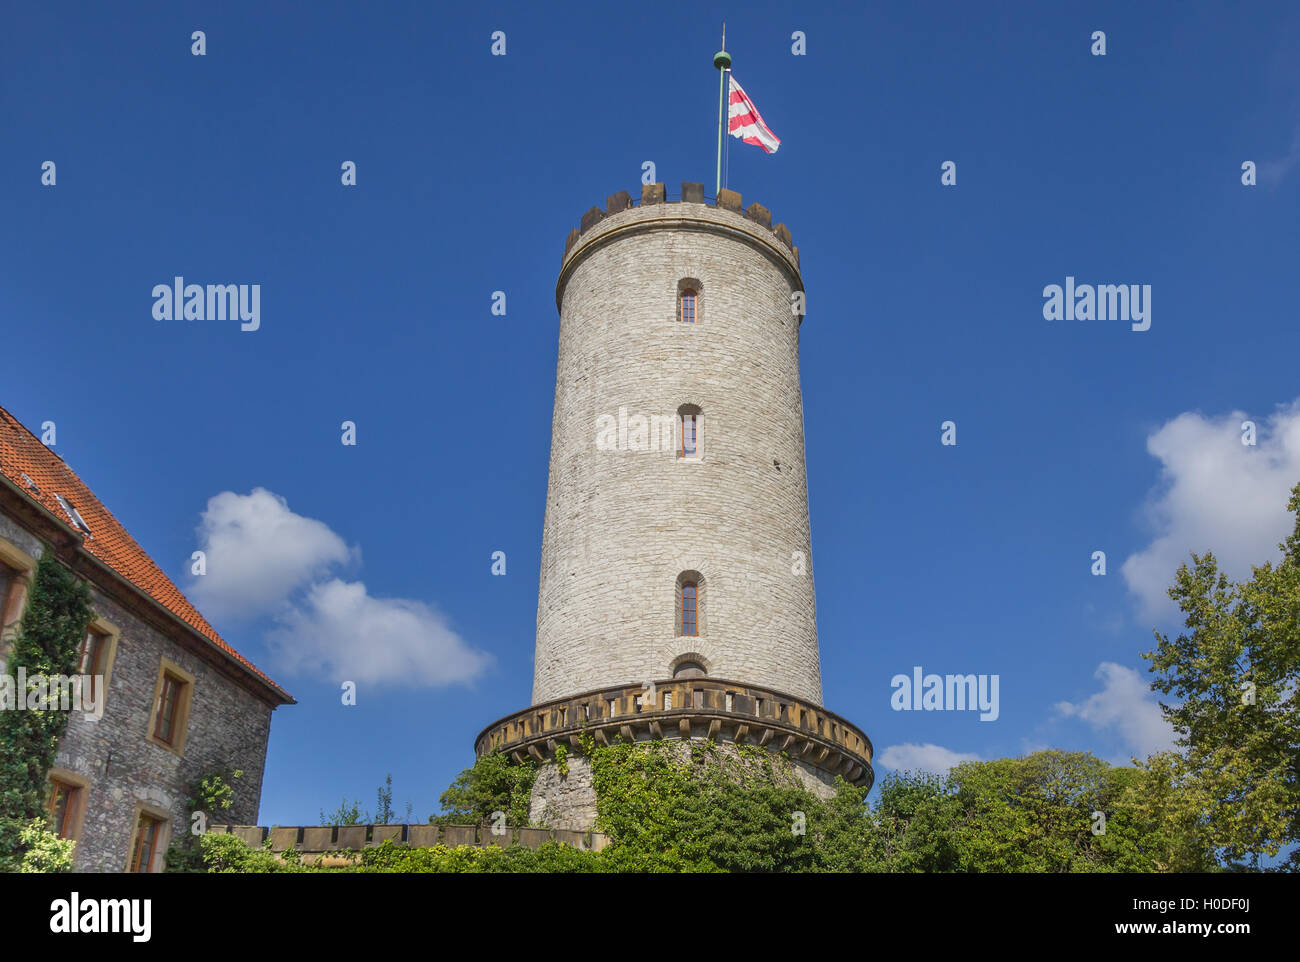 Turm der Burg Sparrenburg in Bielefeld, Deutschland Stockfoto